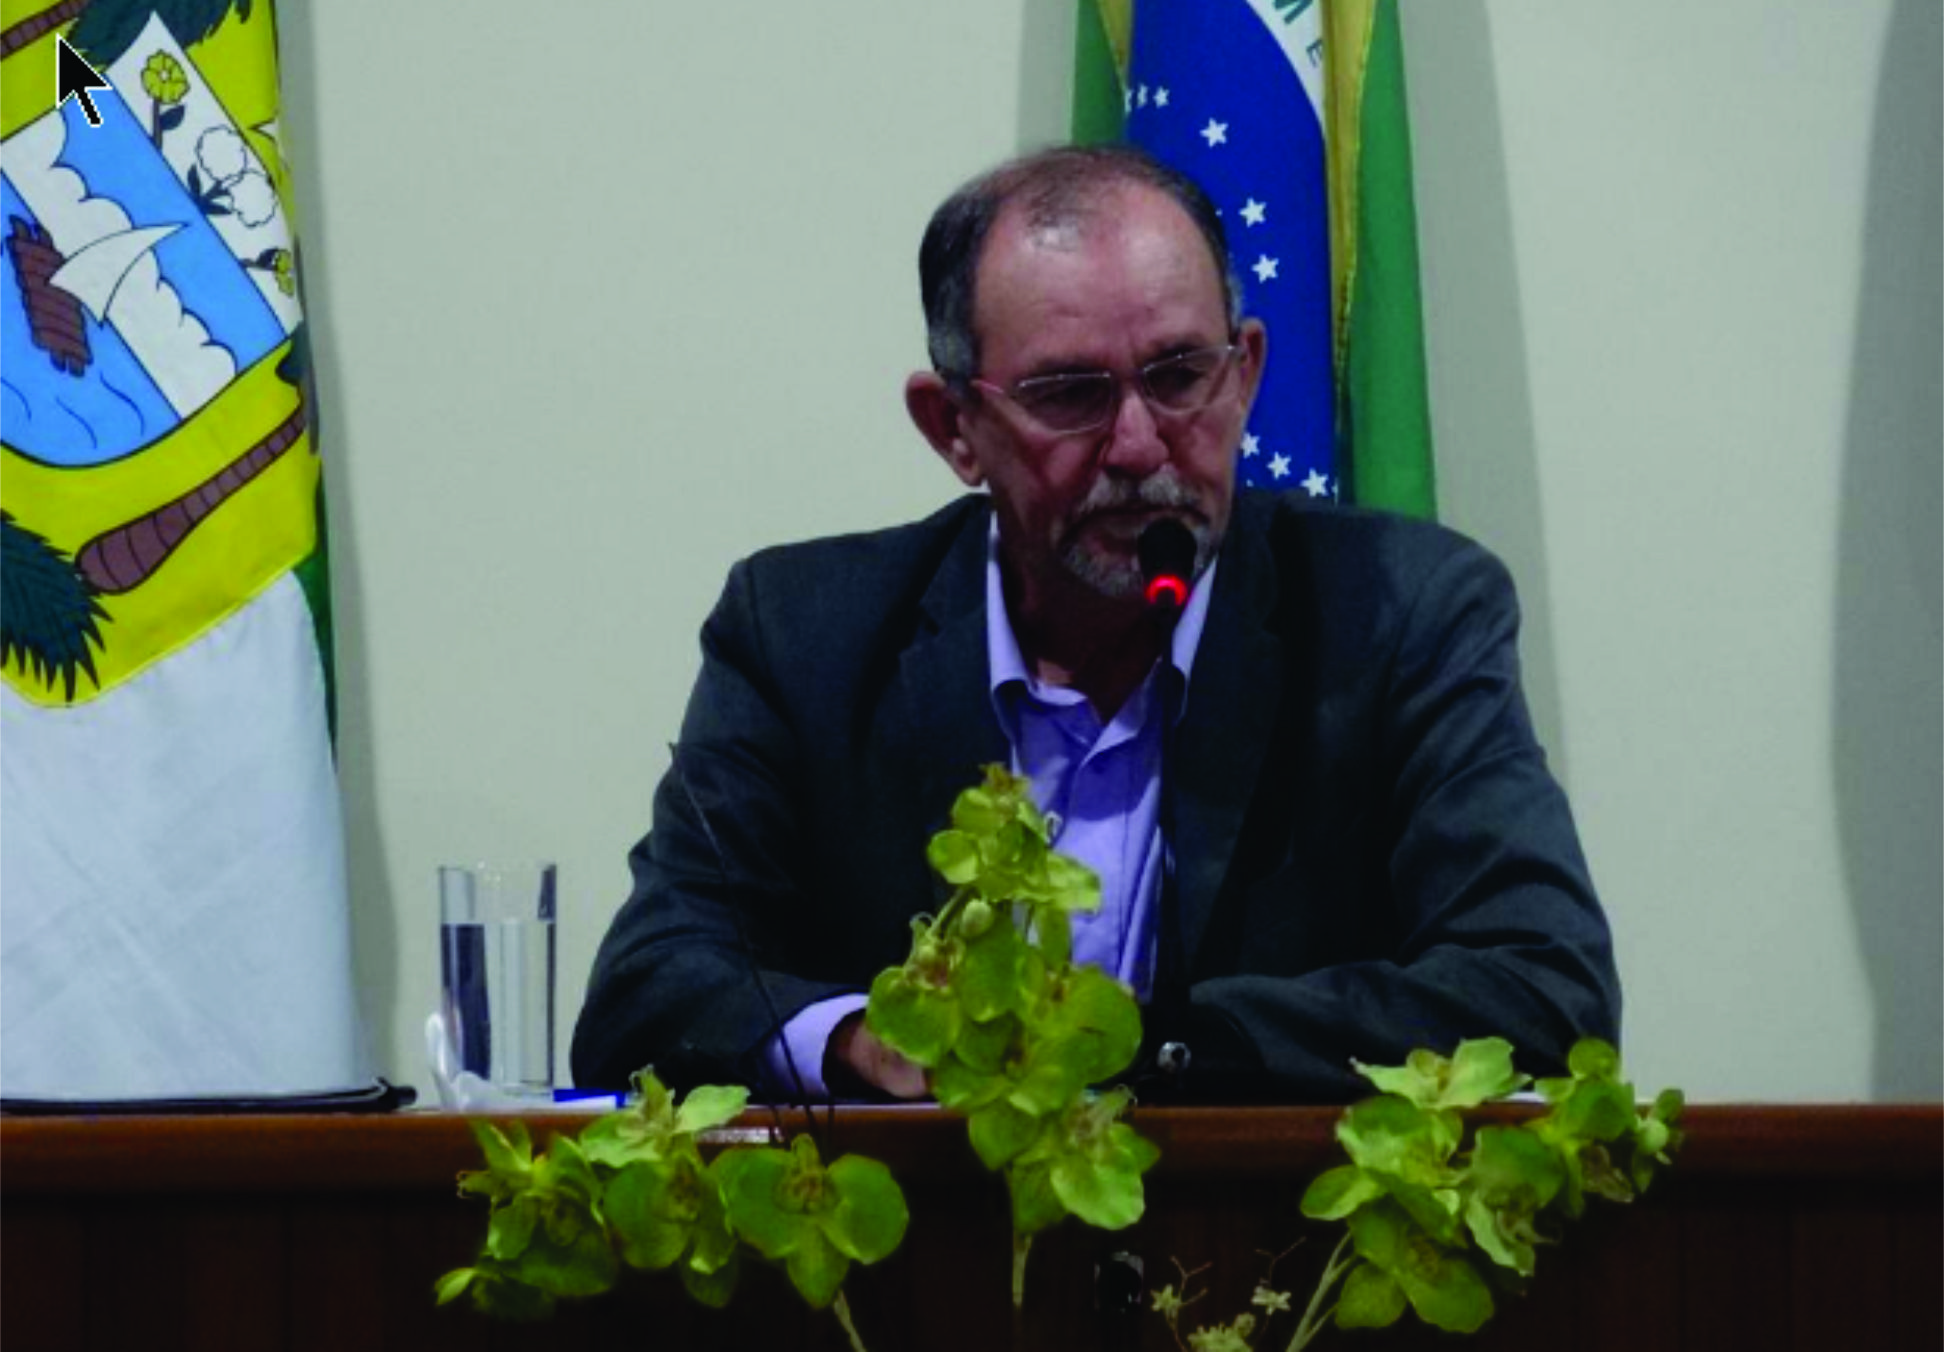 Presidente da Câmara de Vereadores Crizaldo Meira participa de Oficina Técnica no município de Ceará-Mirim